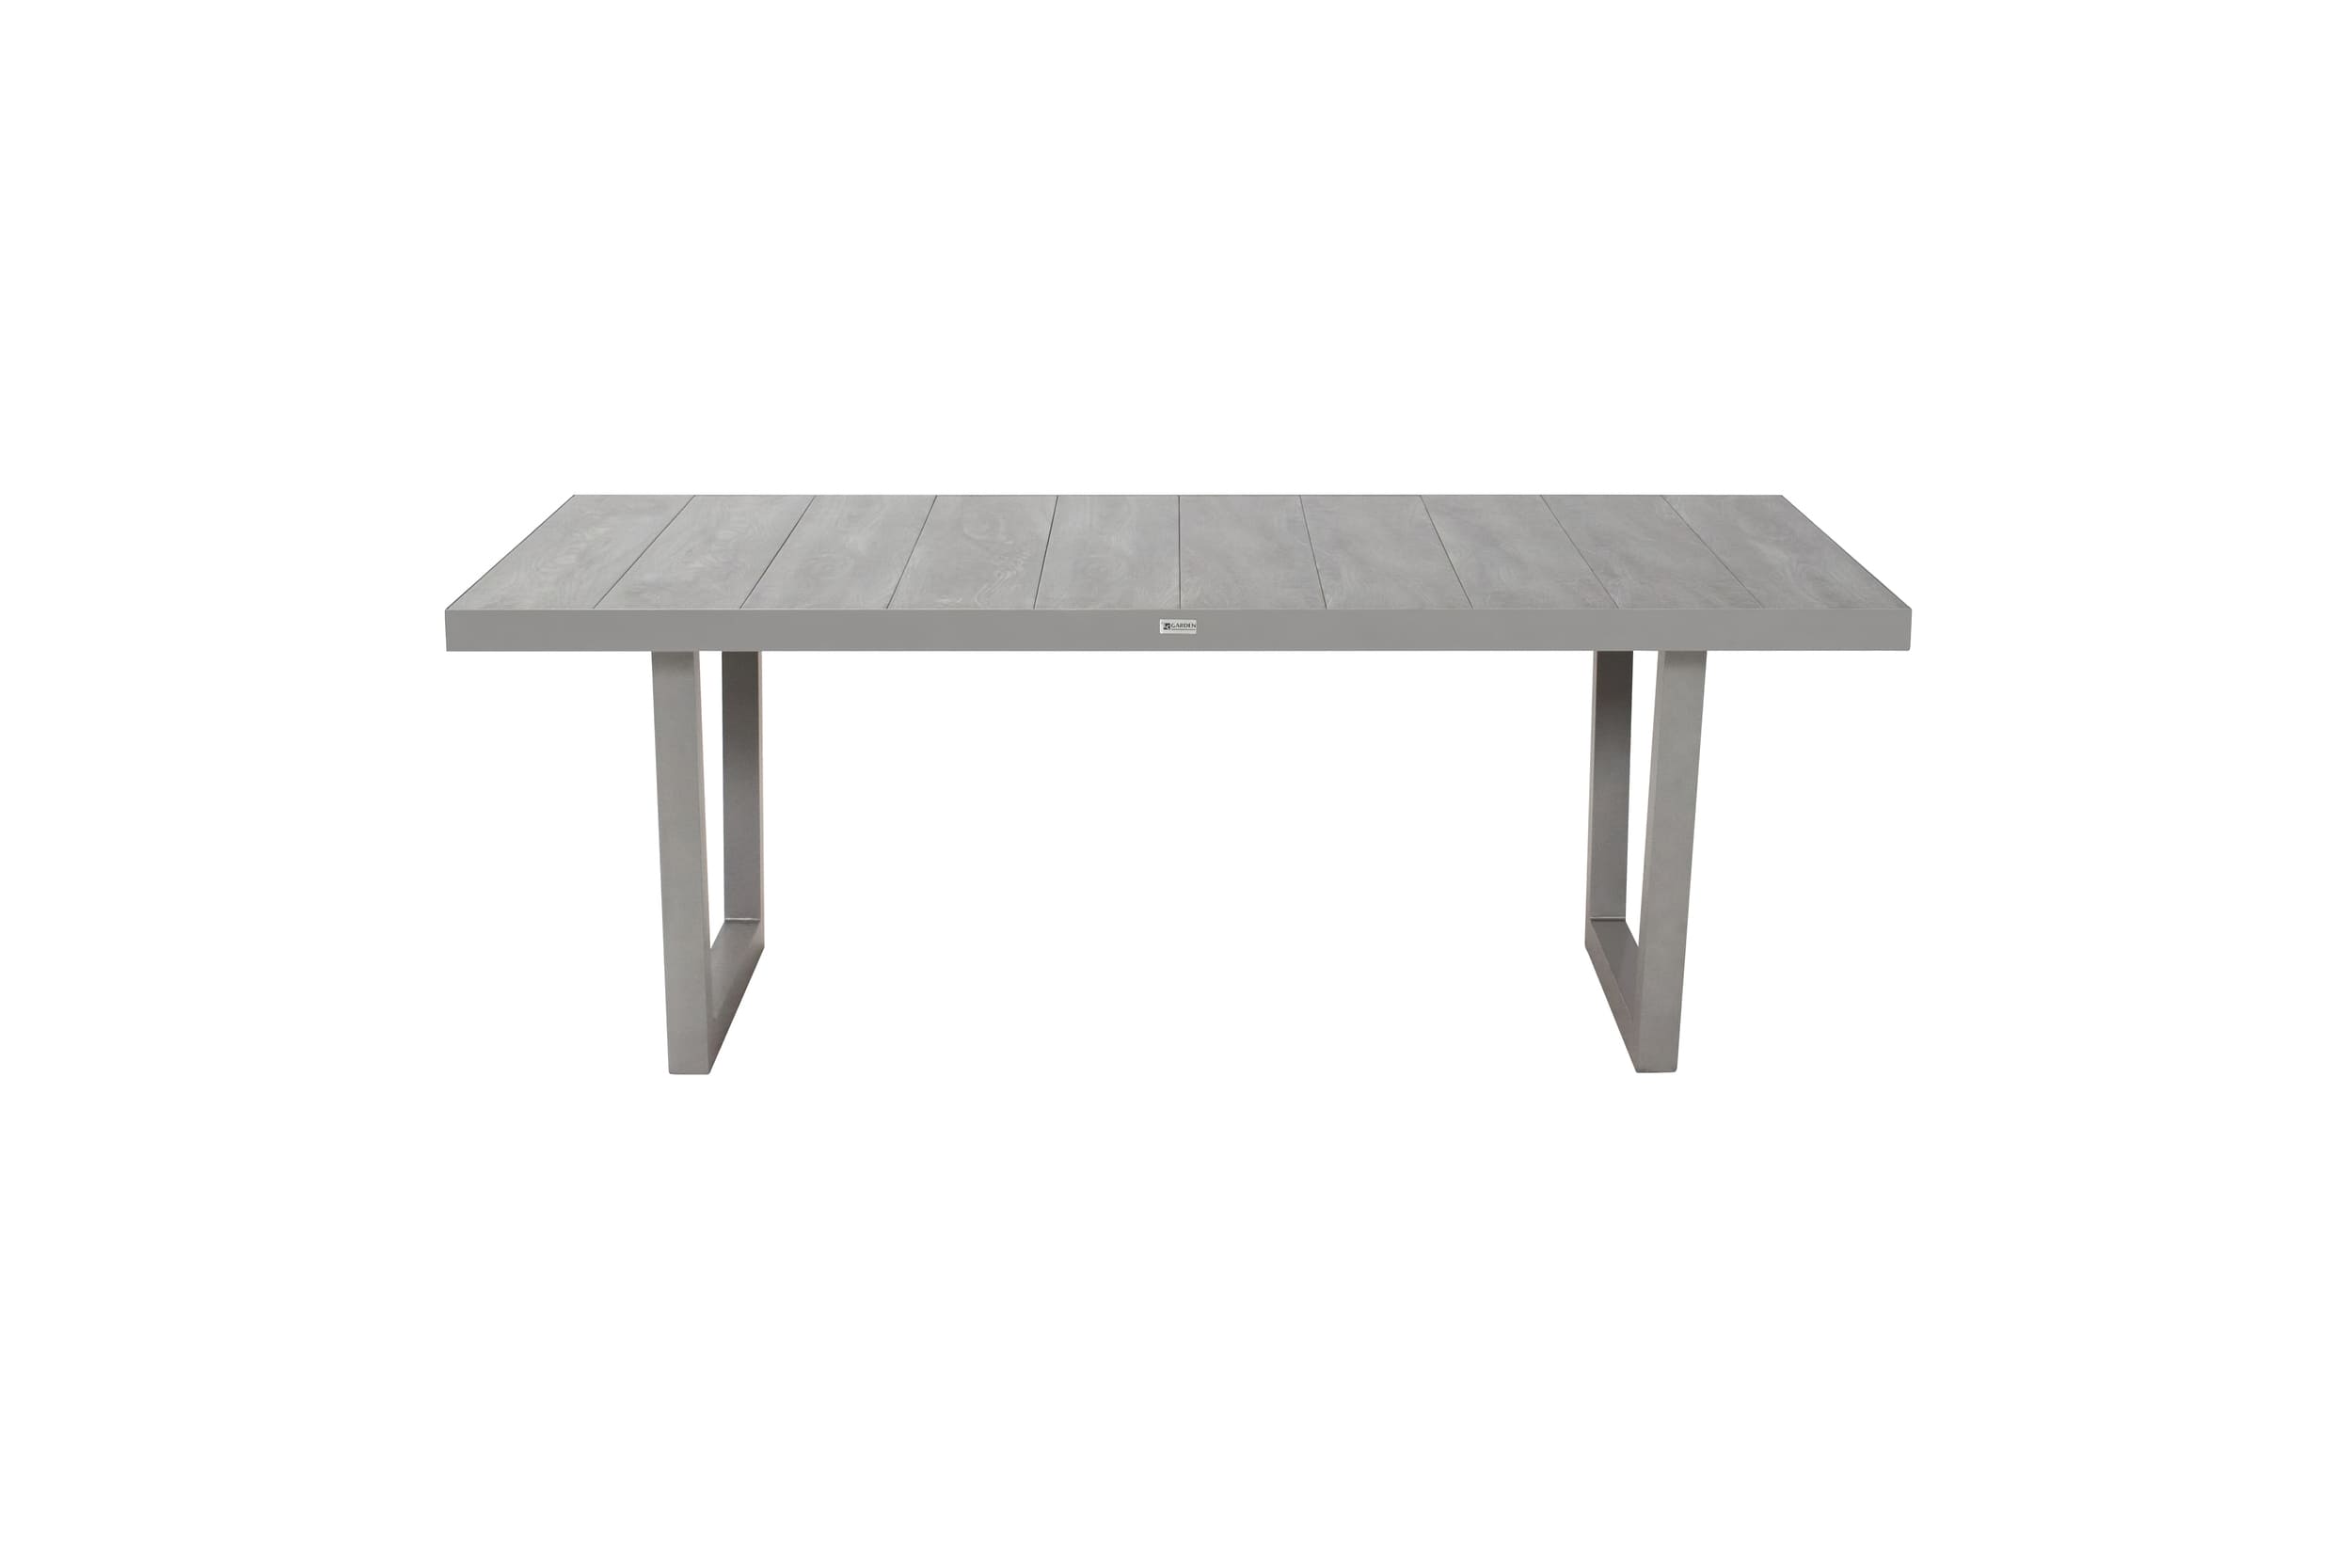 LC Garden »Bondino« Dining Gartentisch mit Tischplatte V-Fuß 200x100x75cm grau Keramik silber